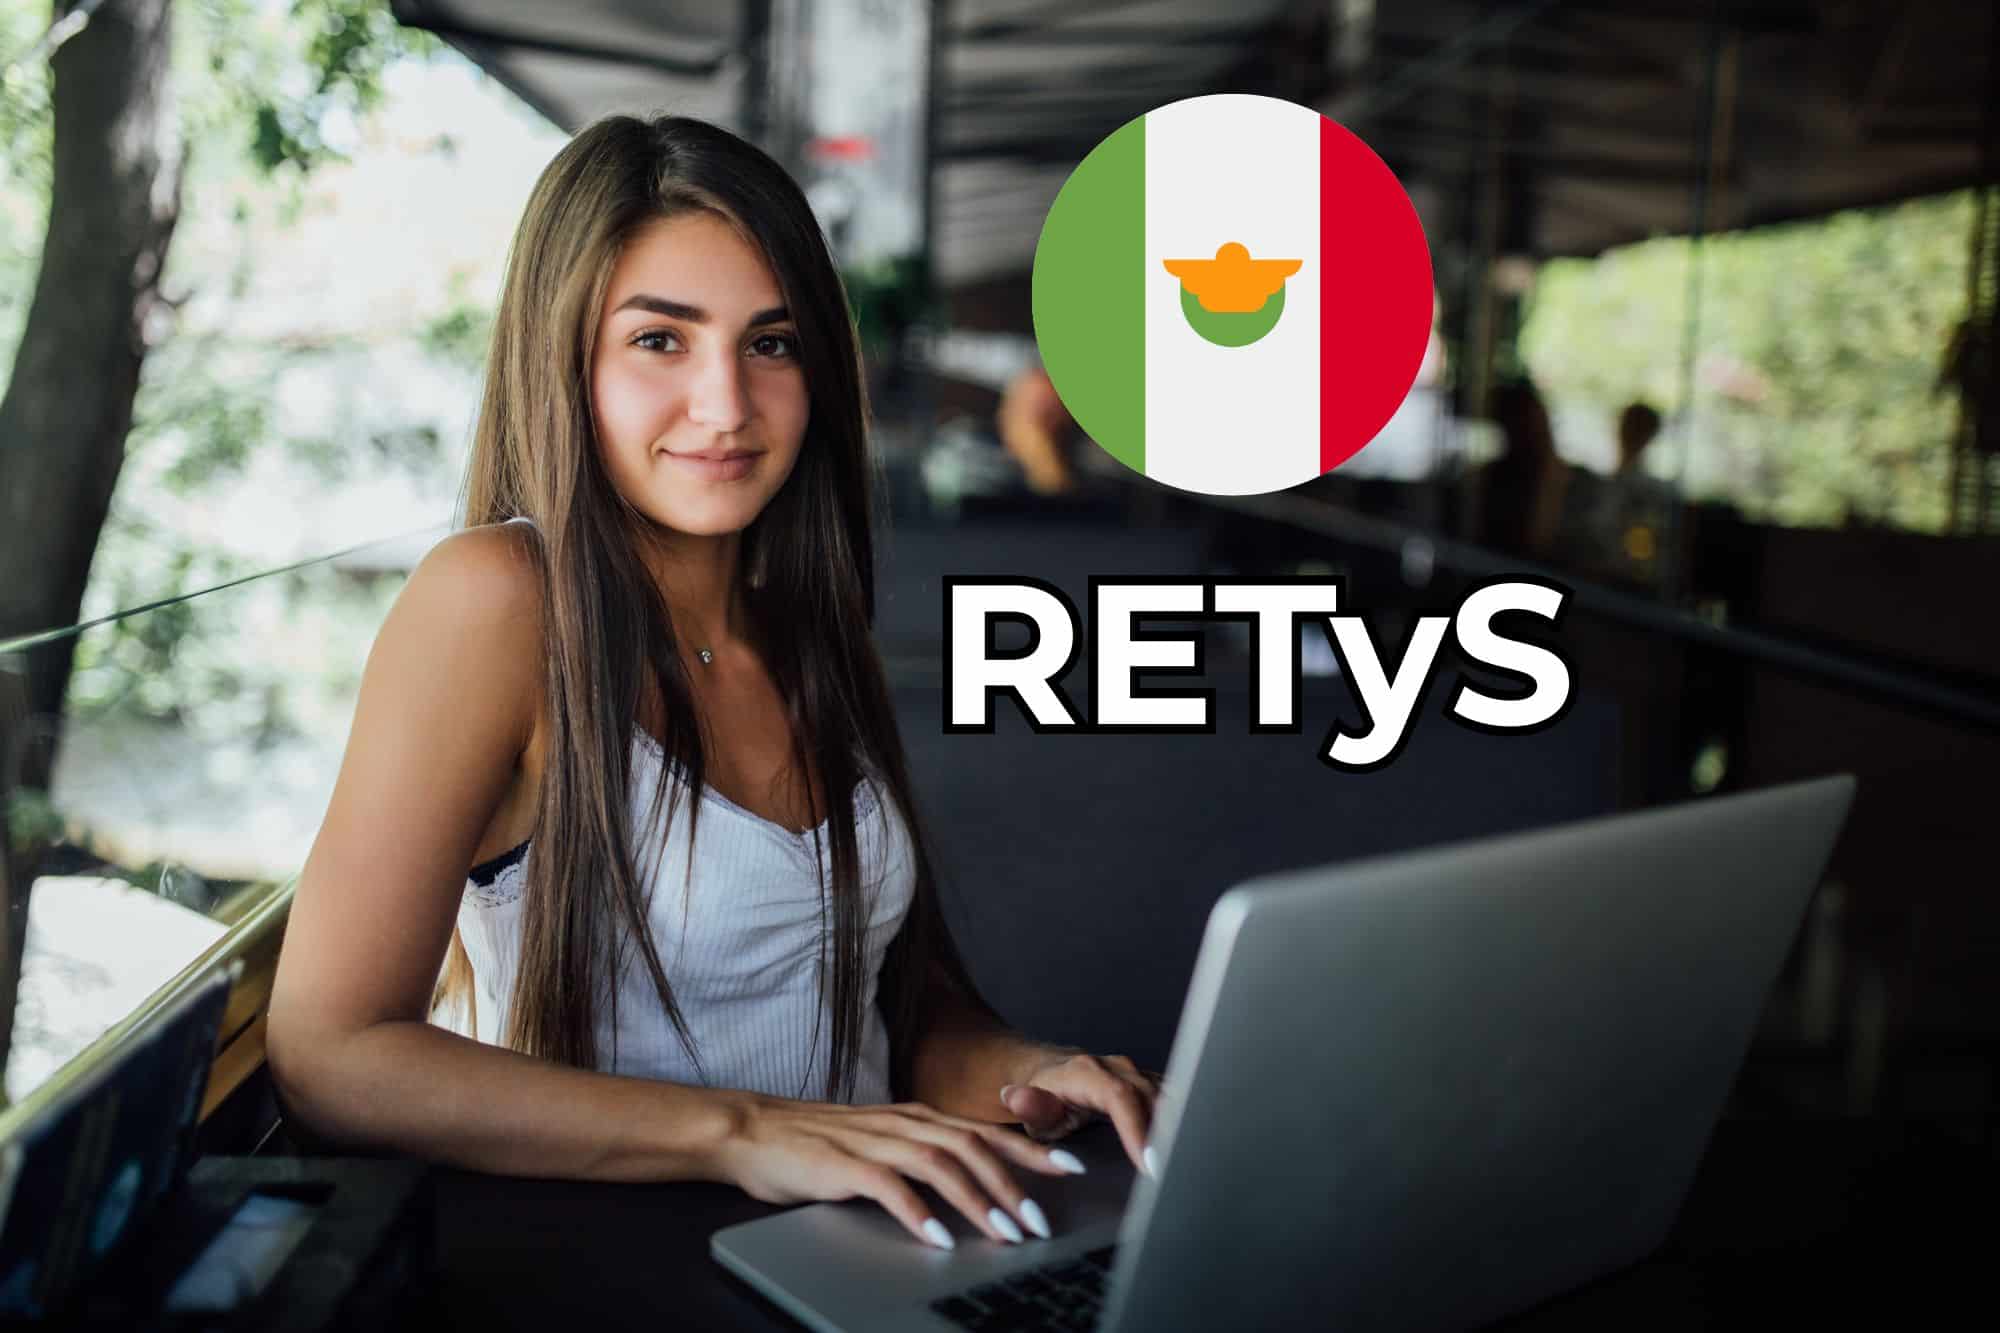 Chica joven usando la computadora para acceder al RETyS